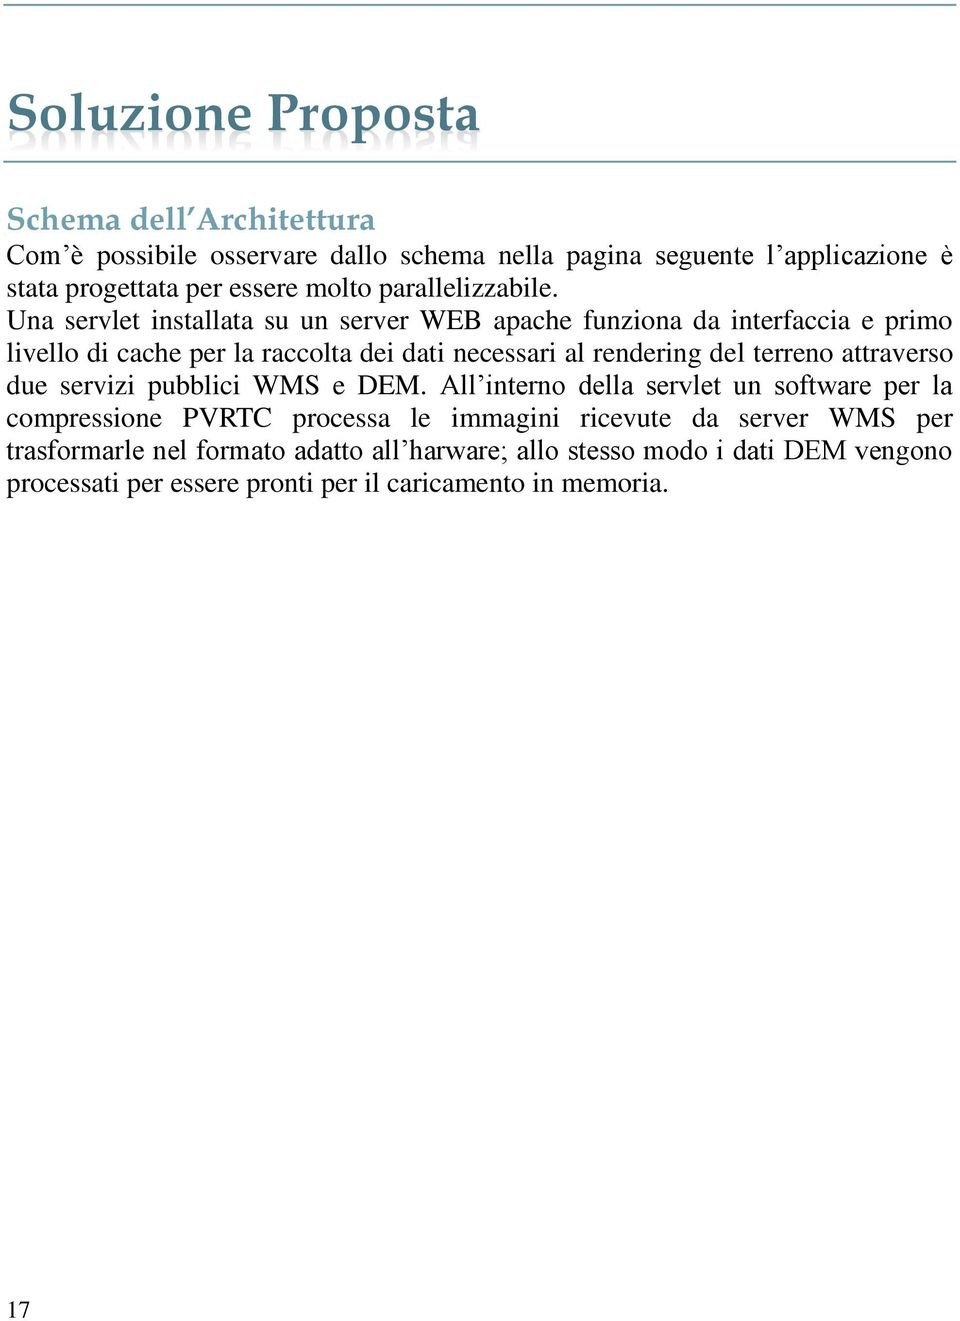 Una servlet installata su un server WEB apache funziona da interfaccia e primo livello di cache per la raccolta dei dati necessari al rendering del terreno